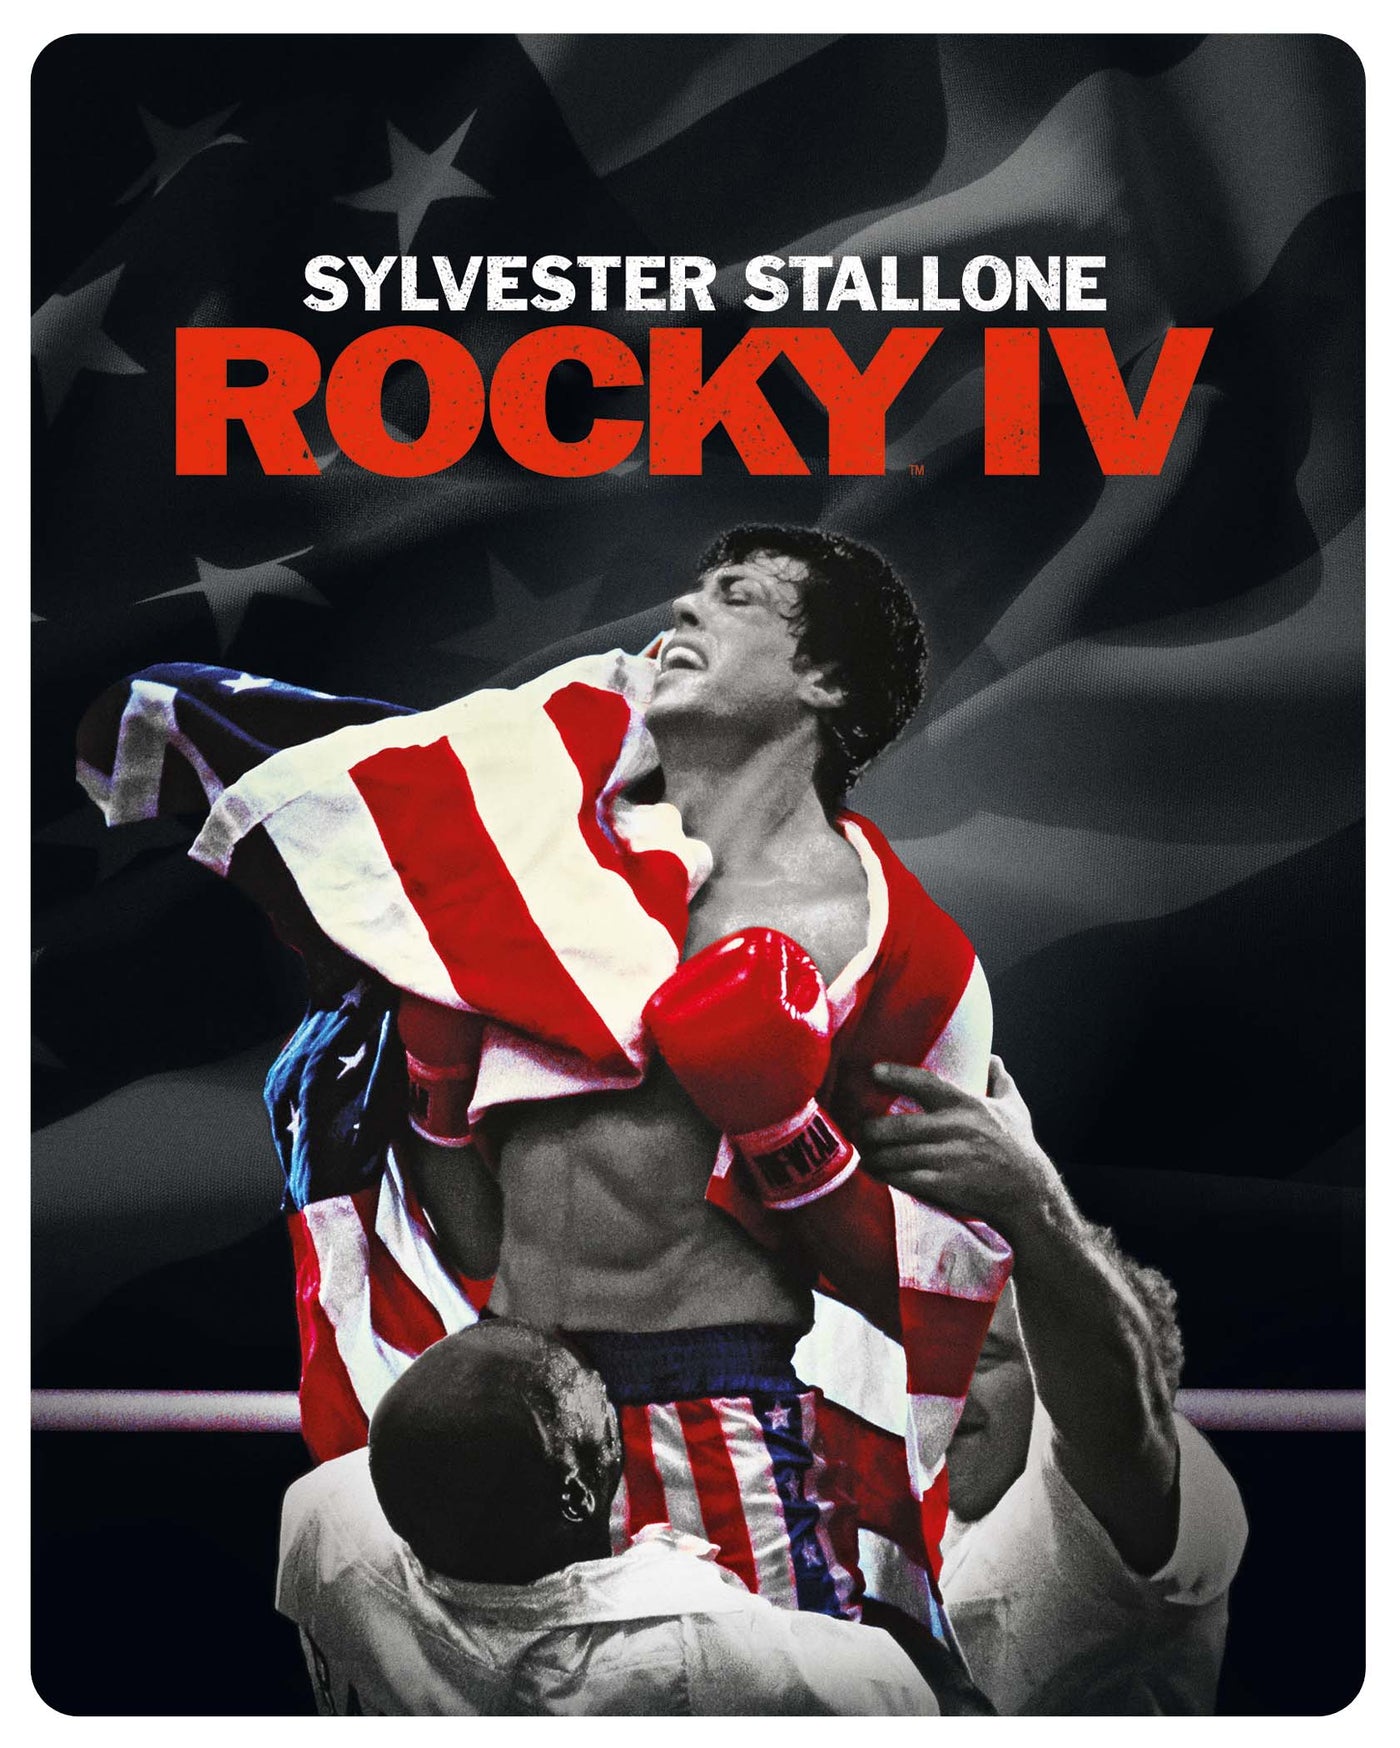 Rocky IV Steelbook (4K Ultra HD) (1985)